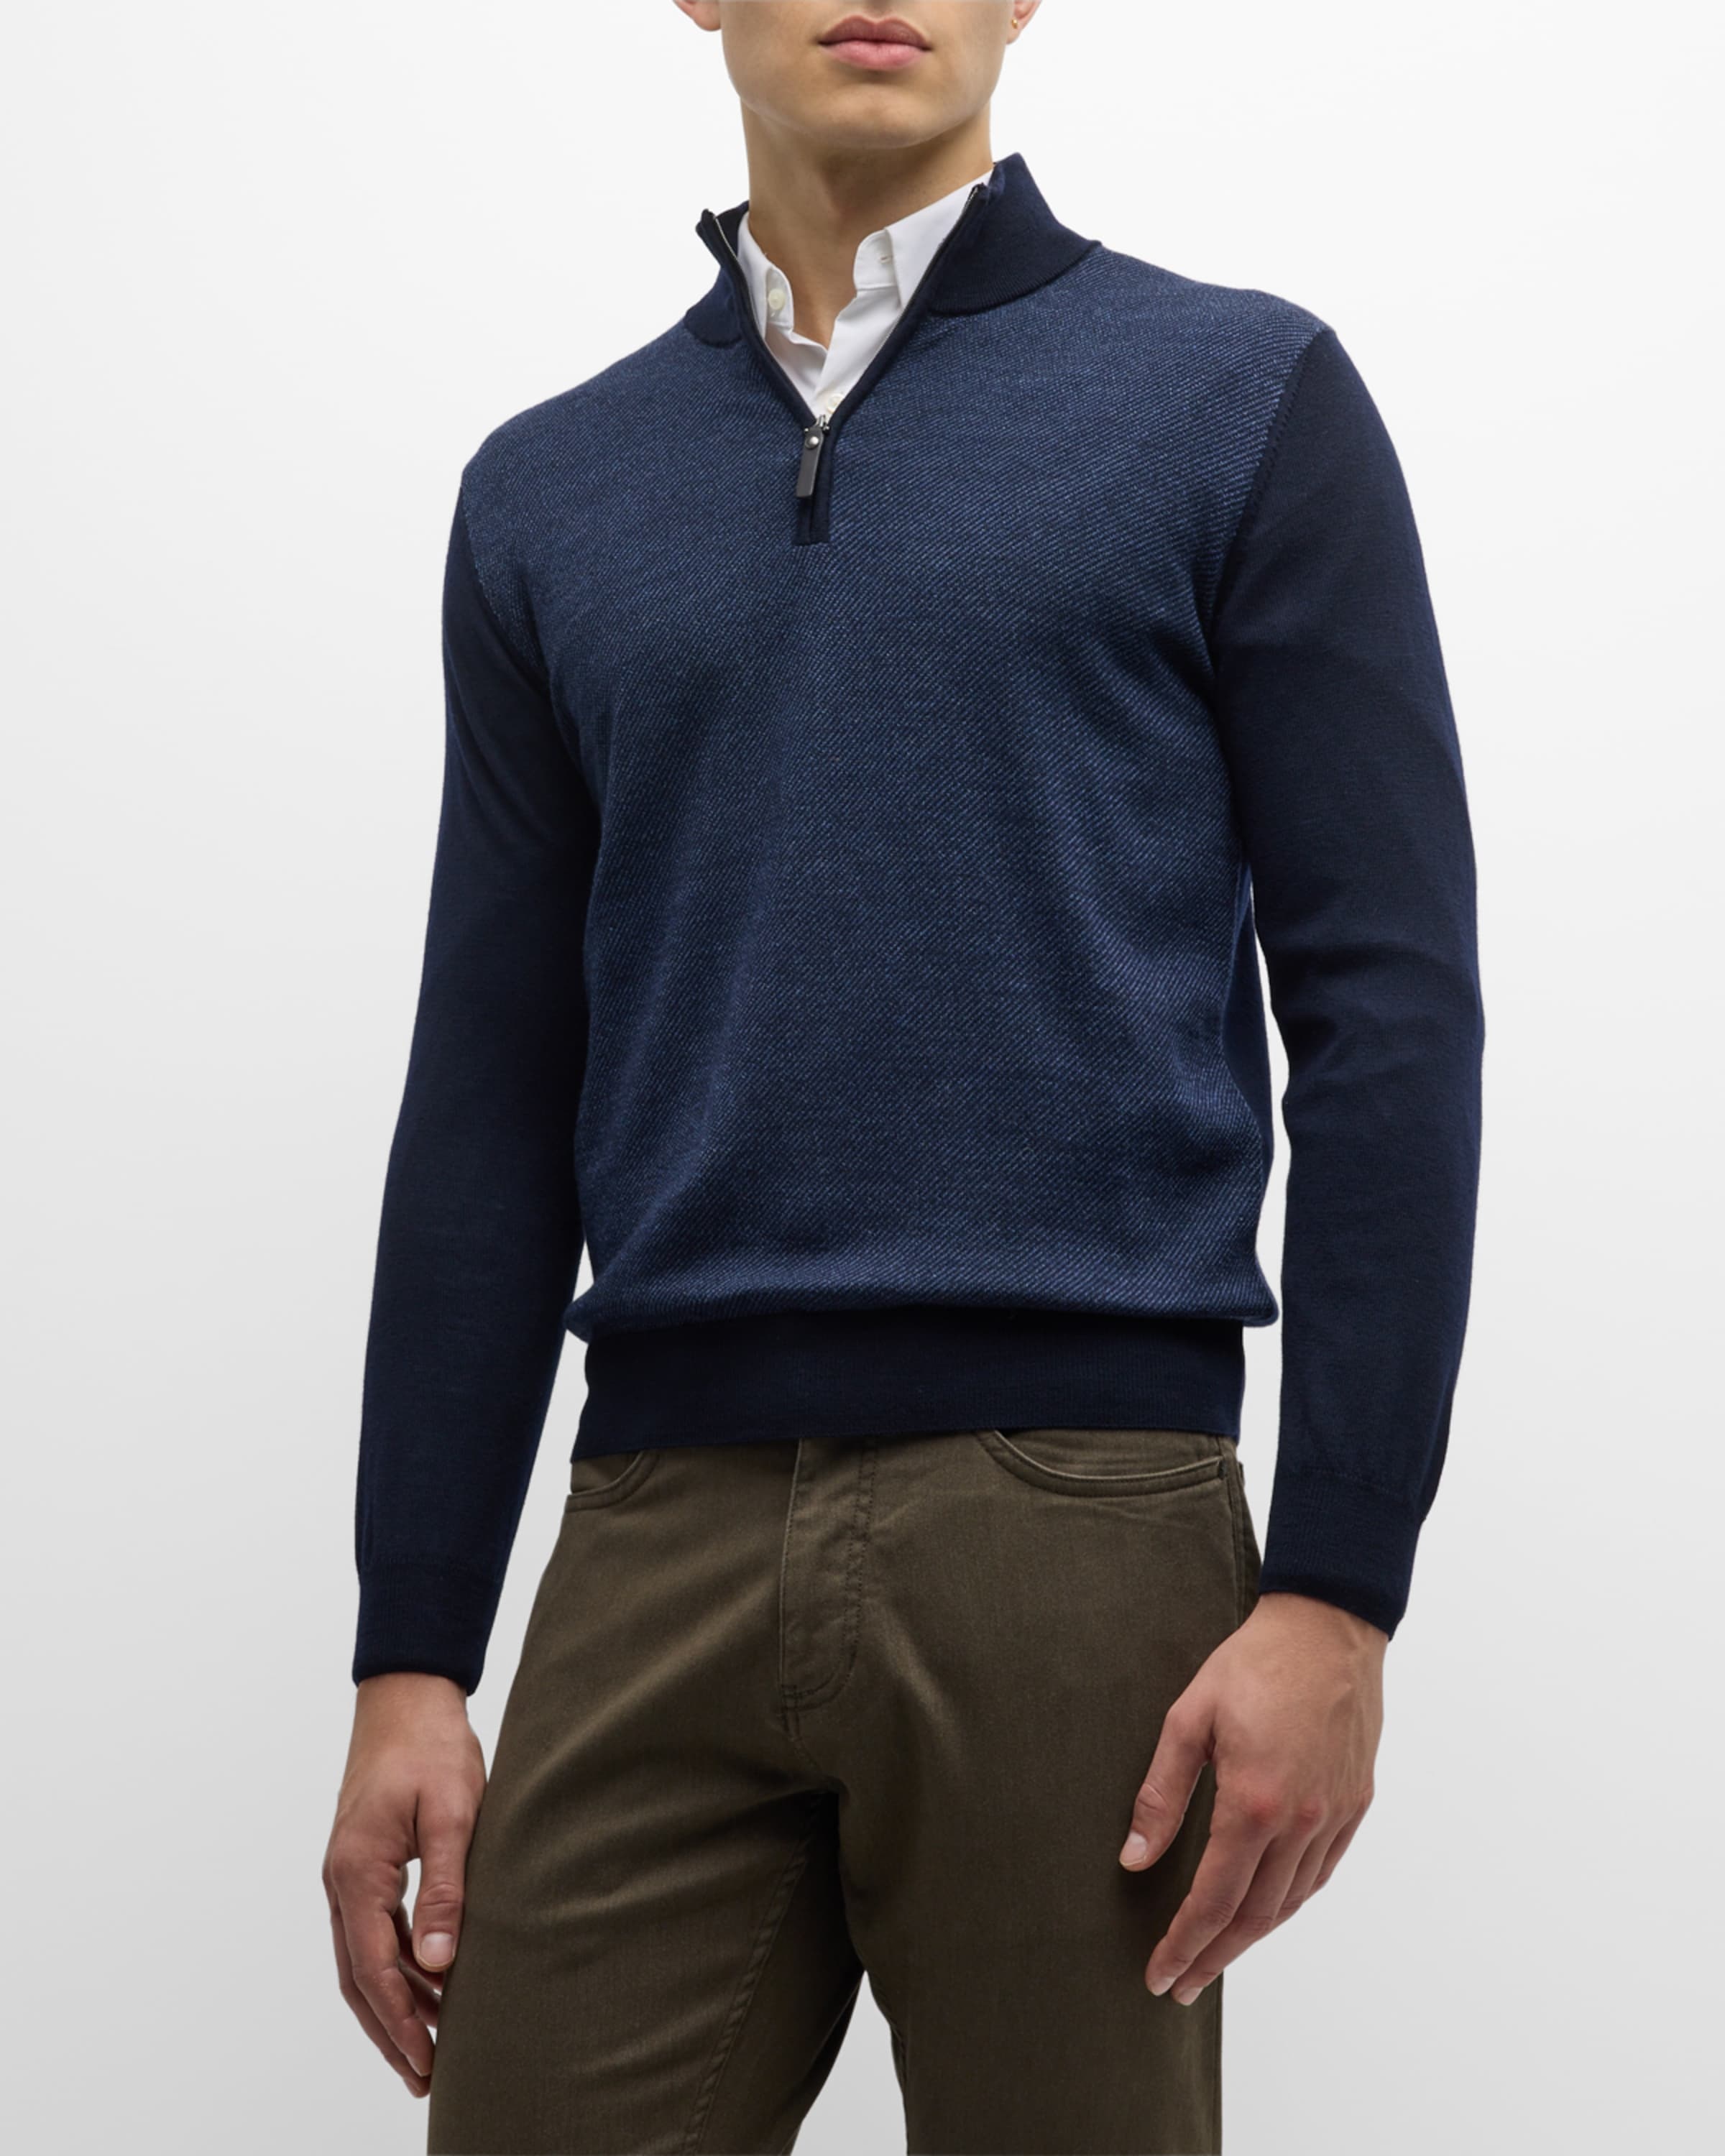 Men's Wool Quarter-Zip Sweater - 2